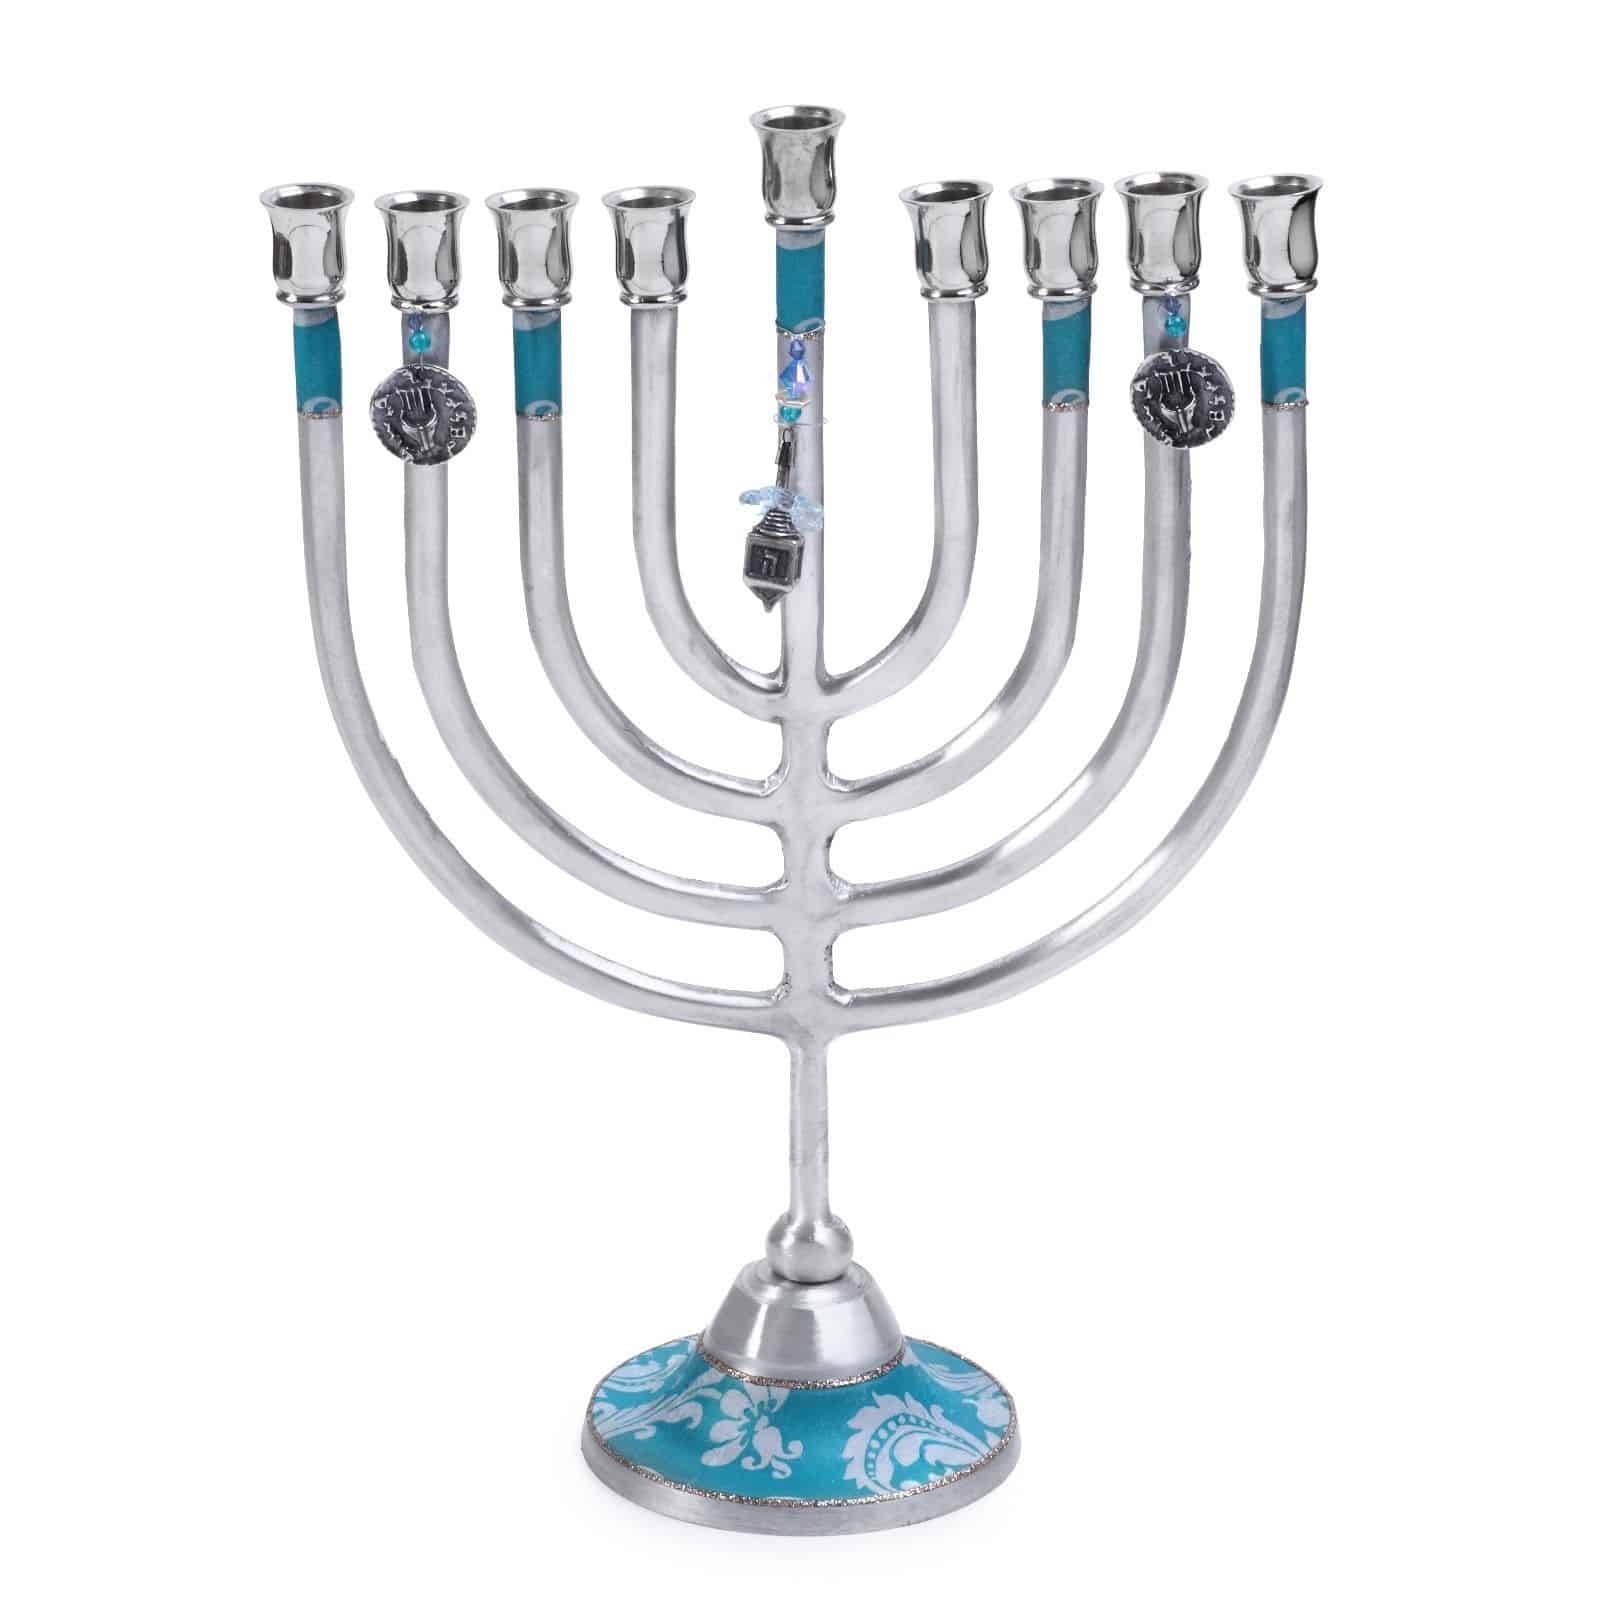 Lily Art Hanukkah Menorah In Blue And Aluminium With Dreidel Charm